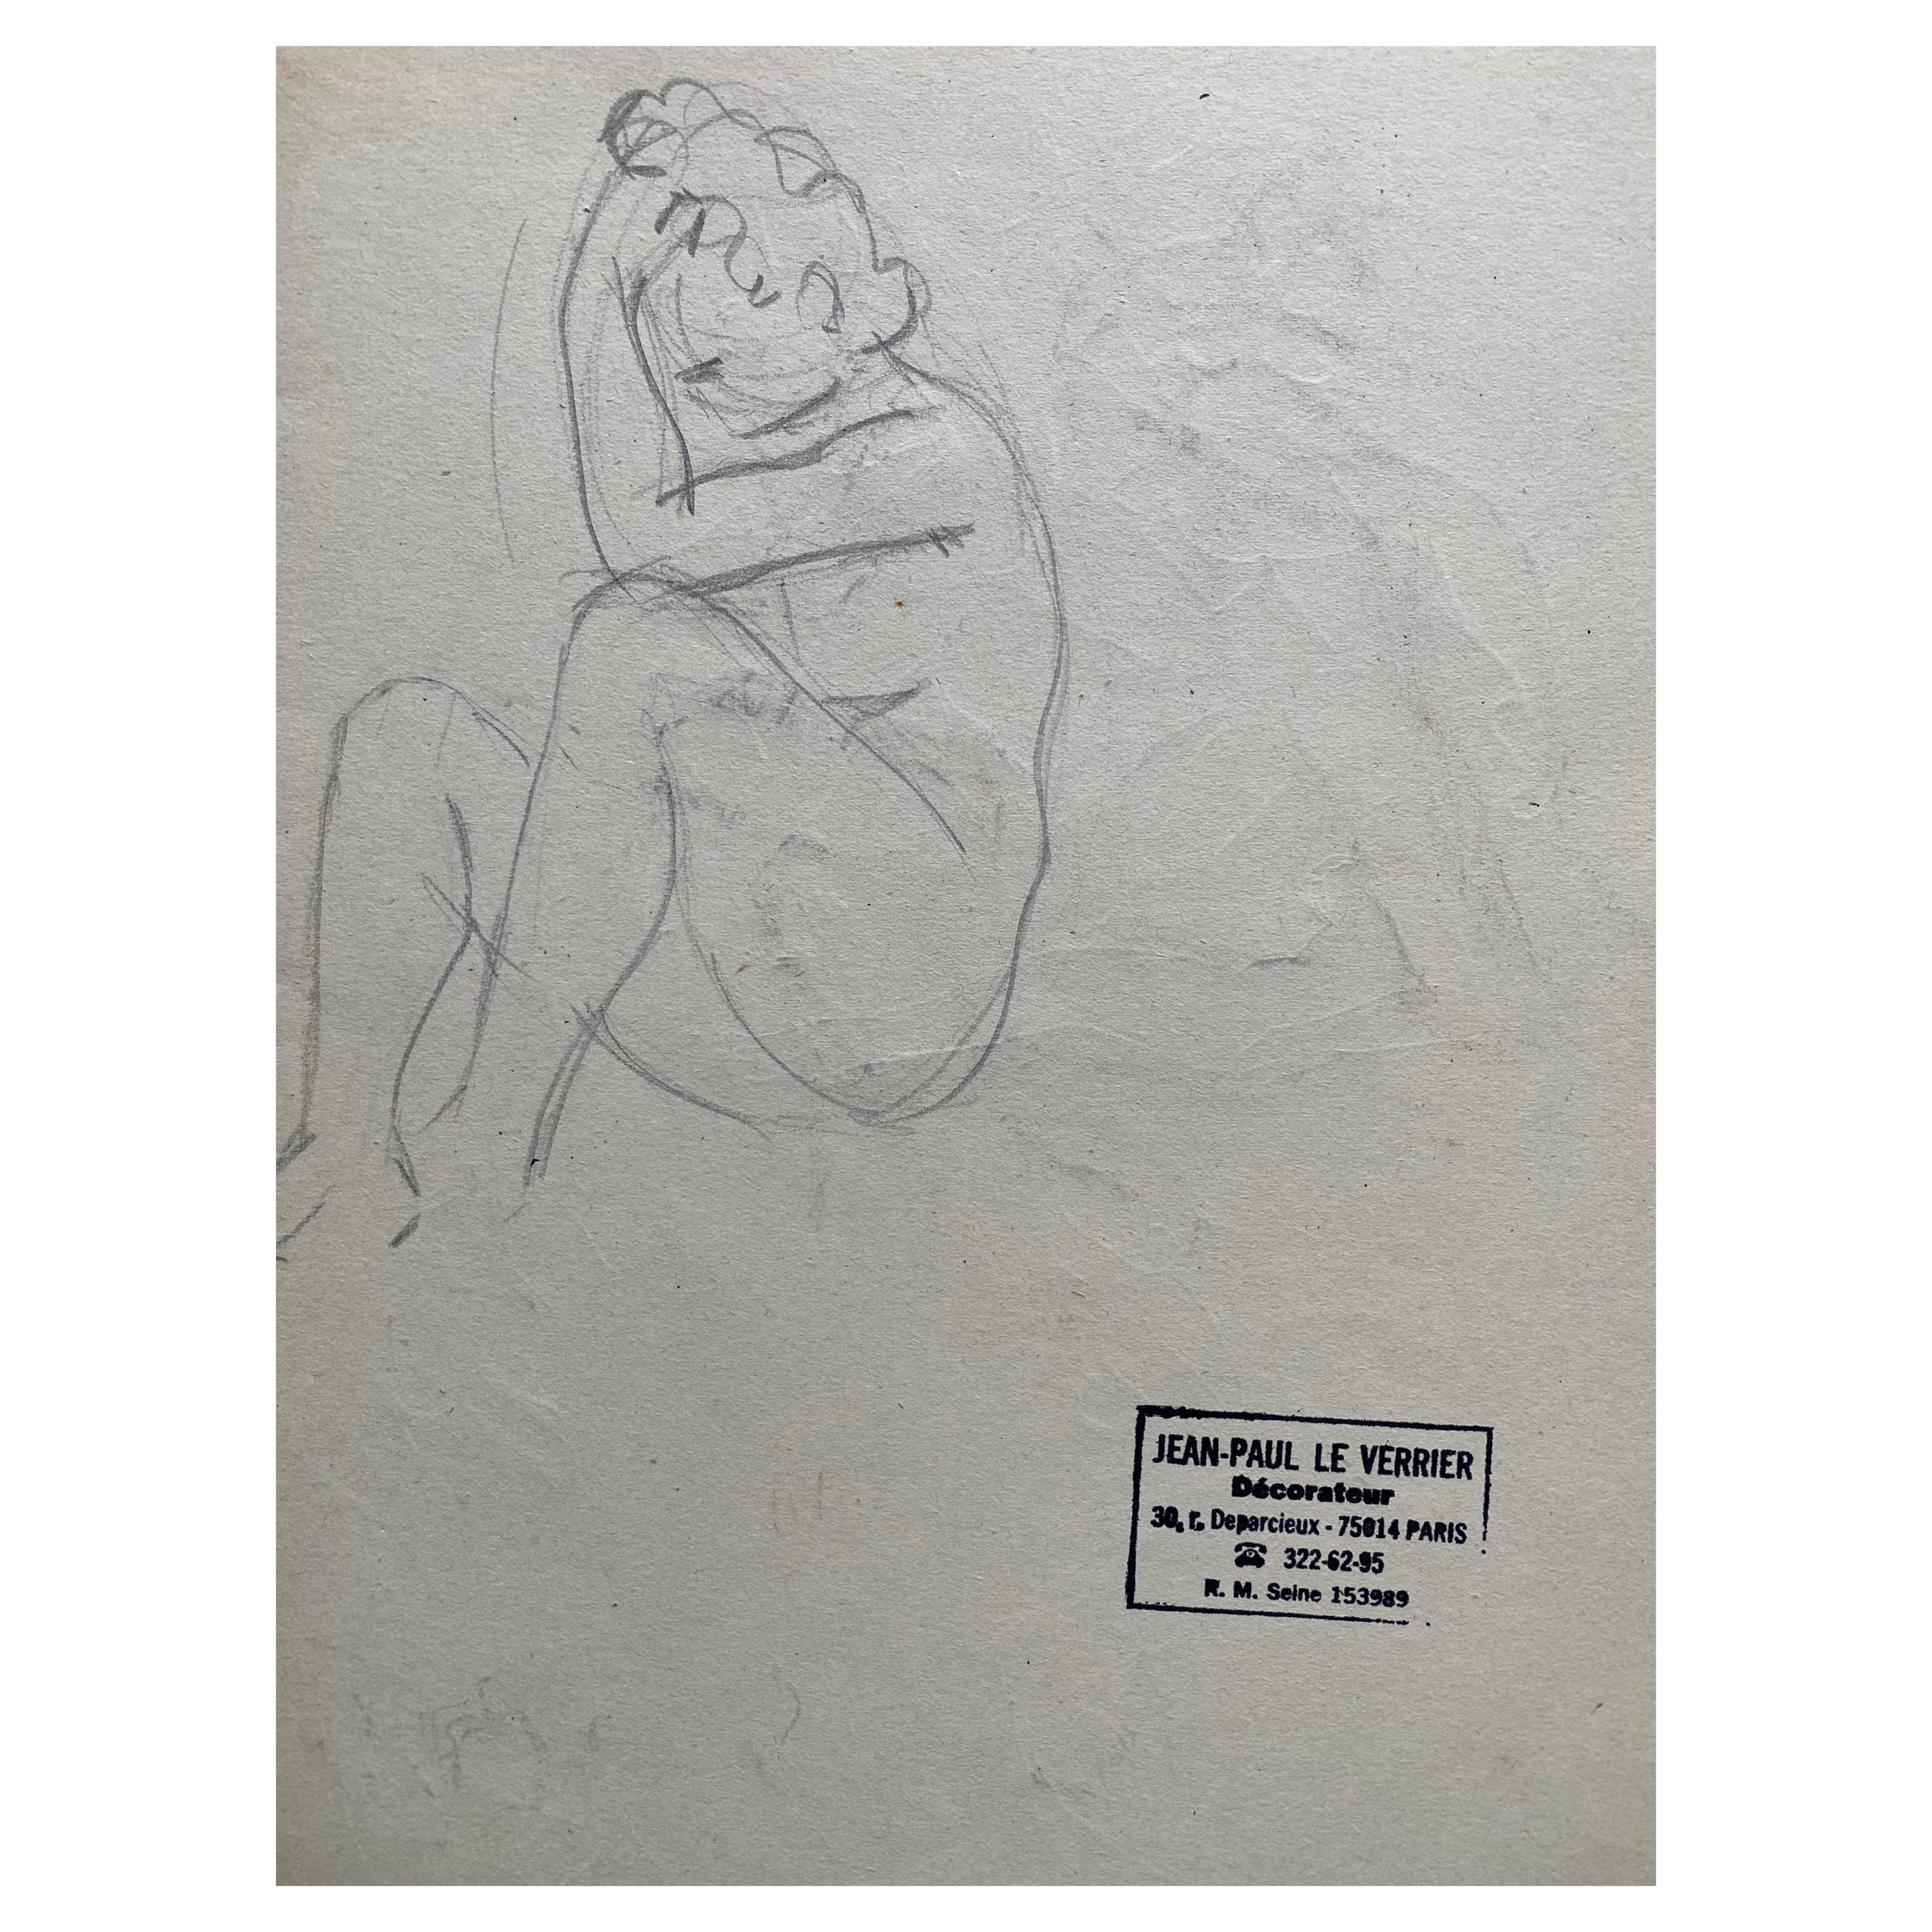 Il s'agit d'un croquis original de femme nue au dessin au trait, datant du milieu du 20e siècle, estampillé